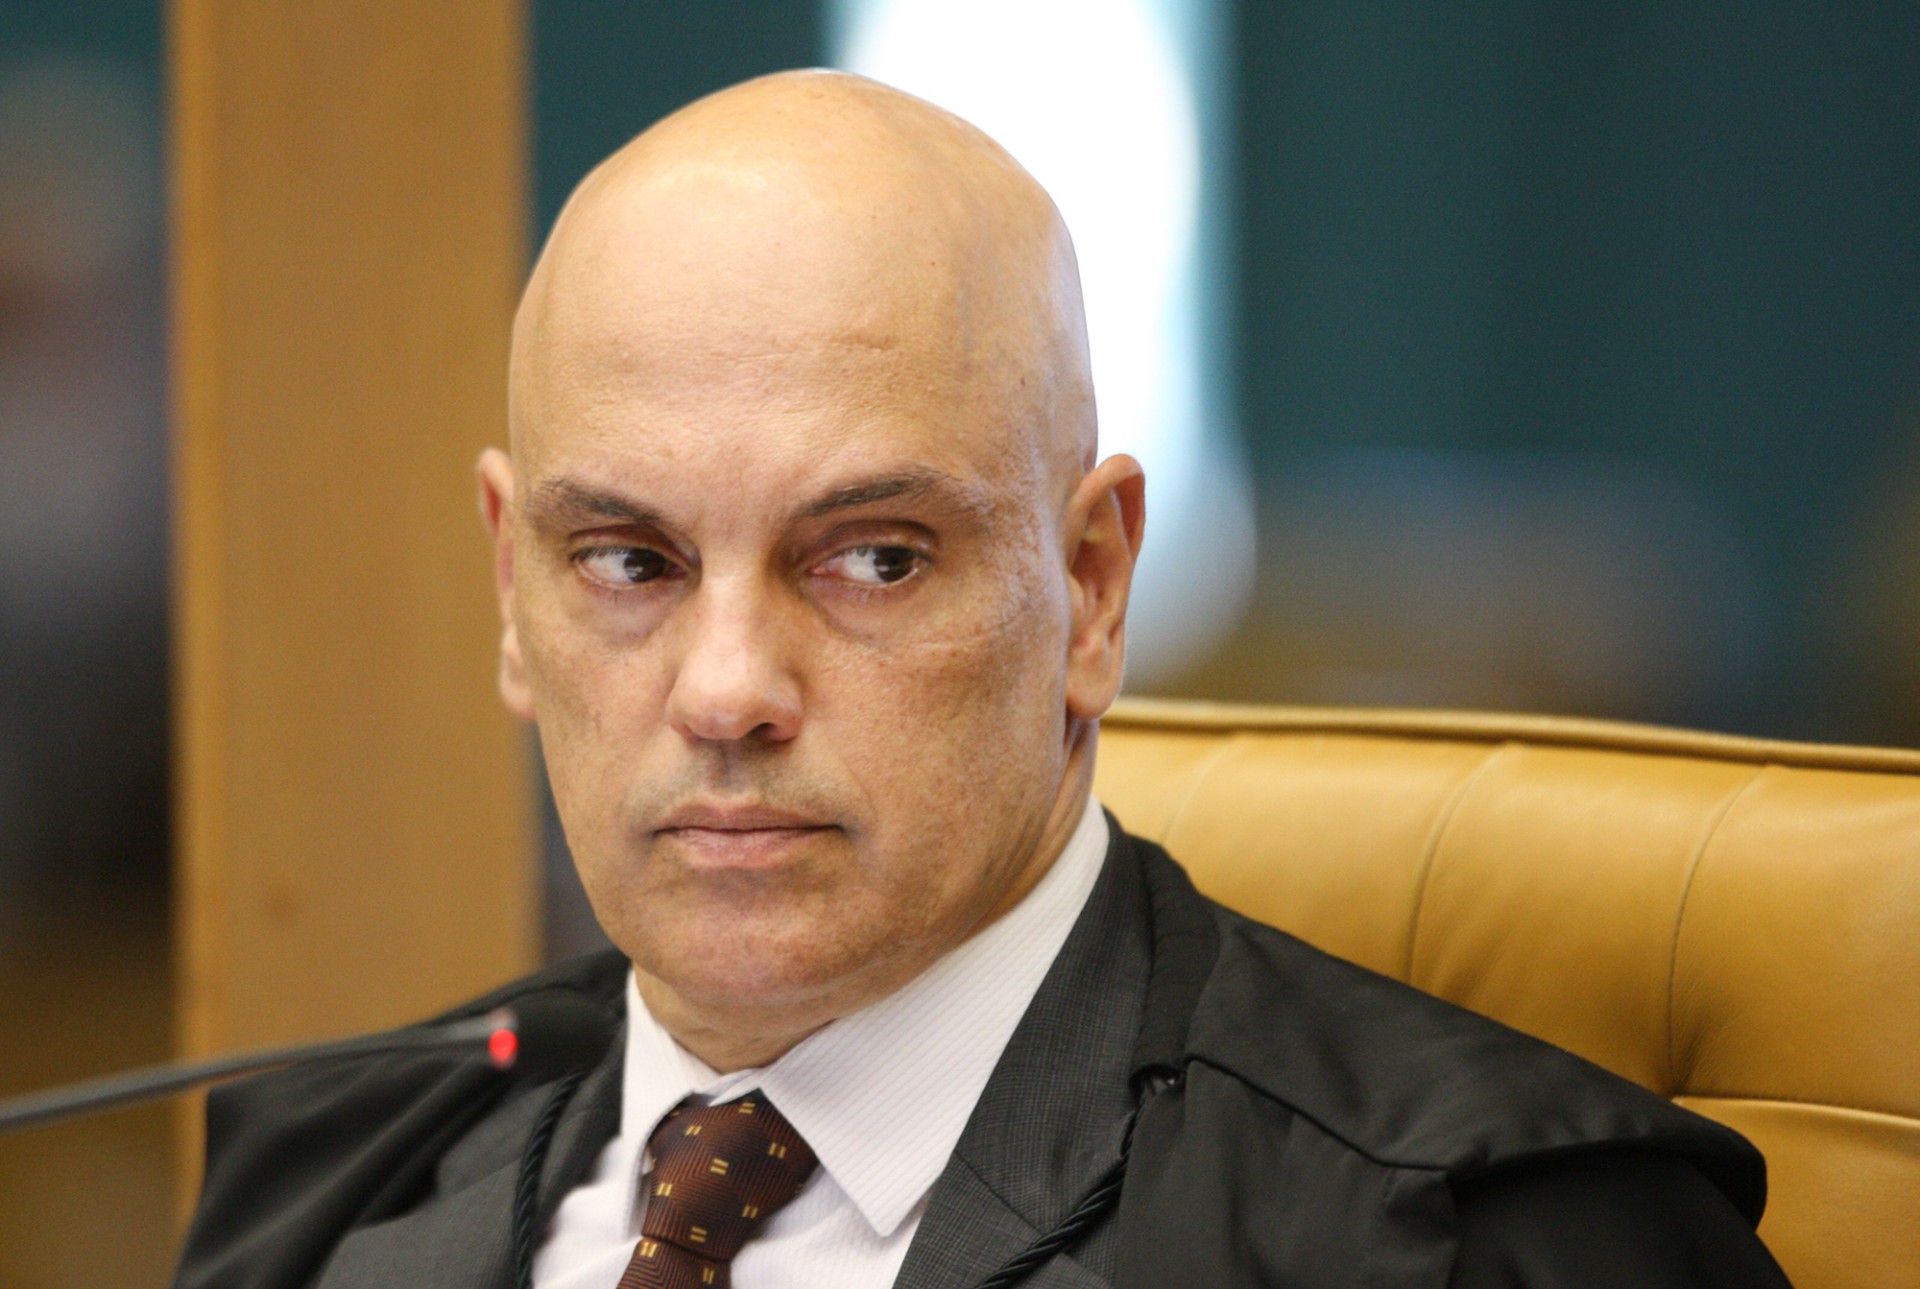  DECISÃO de Moraes também prevê suspensão do presidente às redes sociais por 15 dias  (Foto: Nelson Jr./STF)